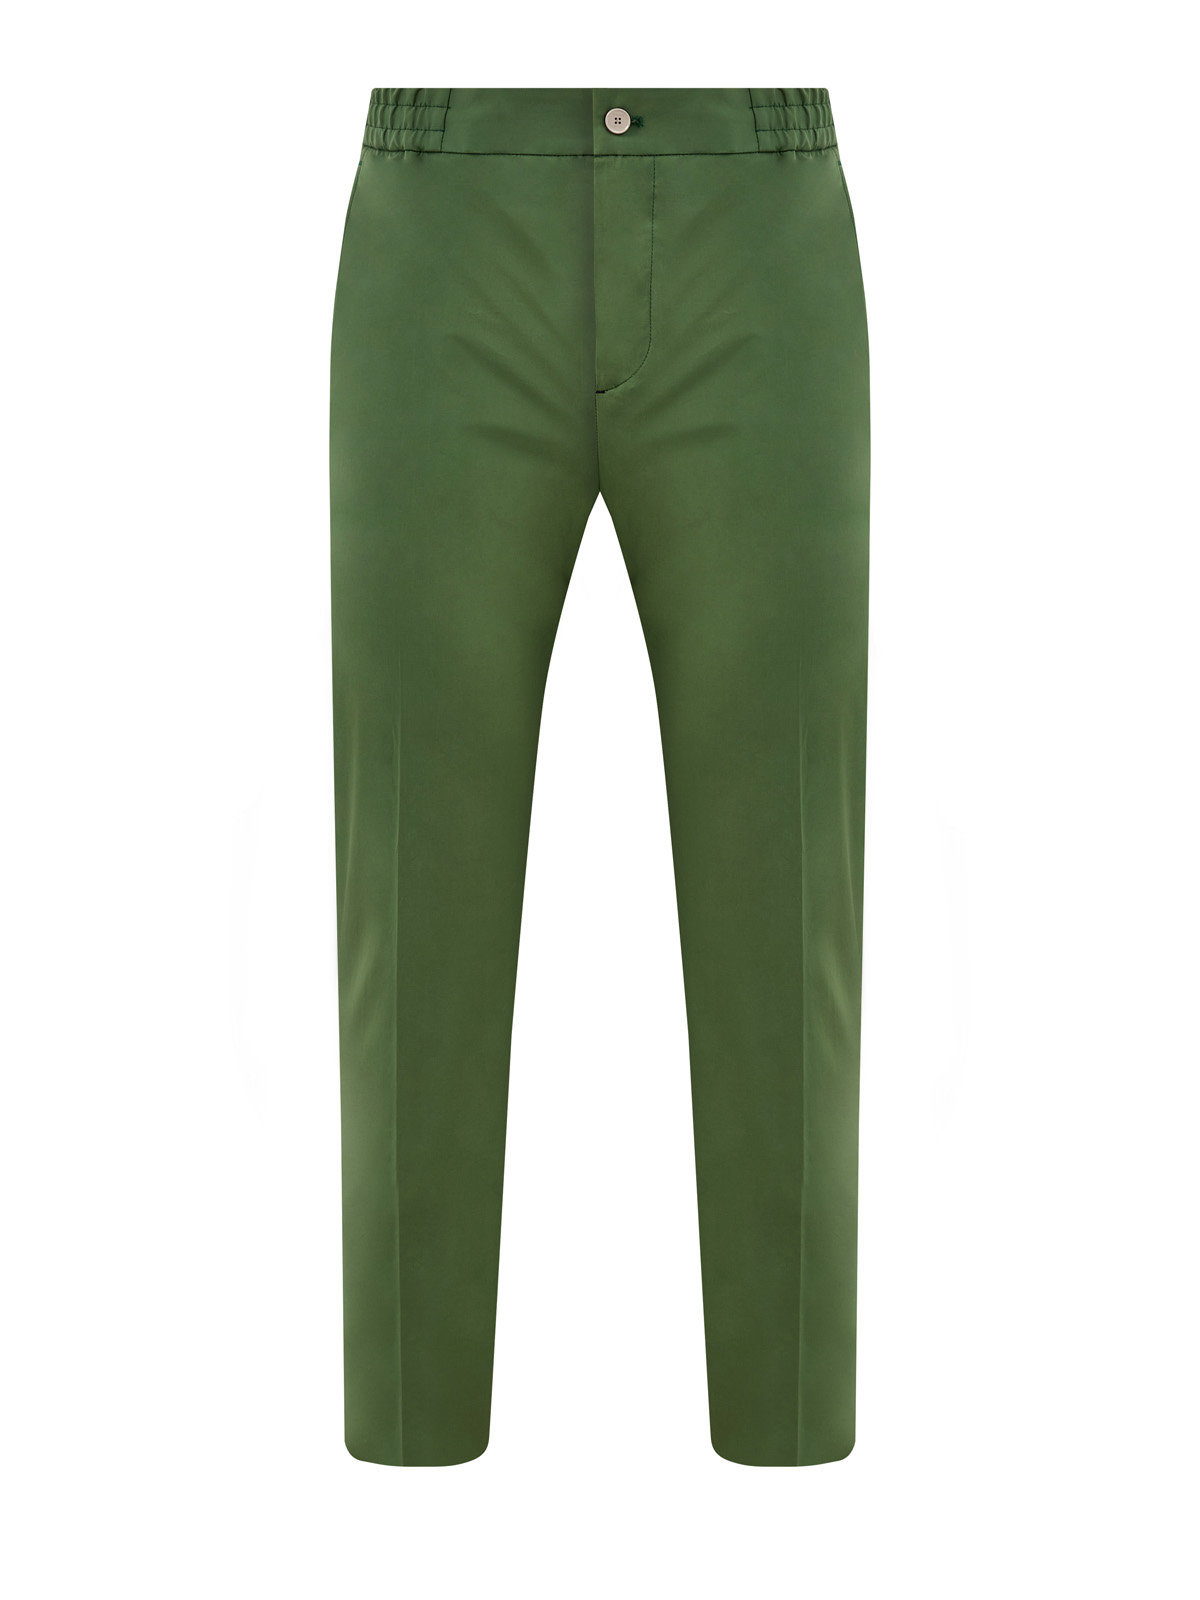 Хлопковые брюки-чиносы с эластичной вставкой на поясе ETRO зеленого цвета